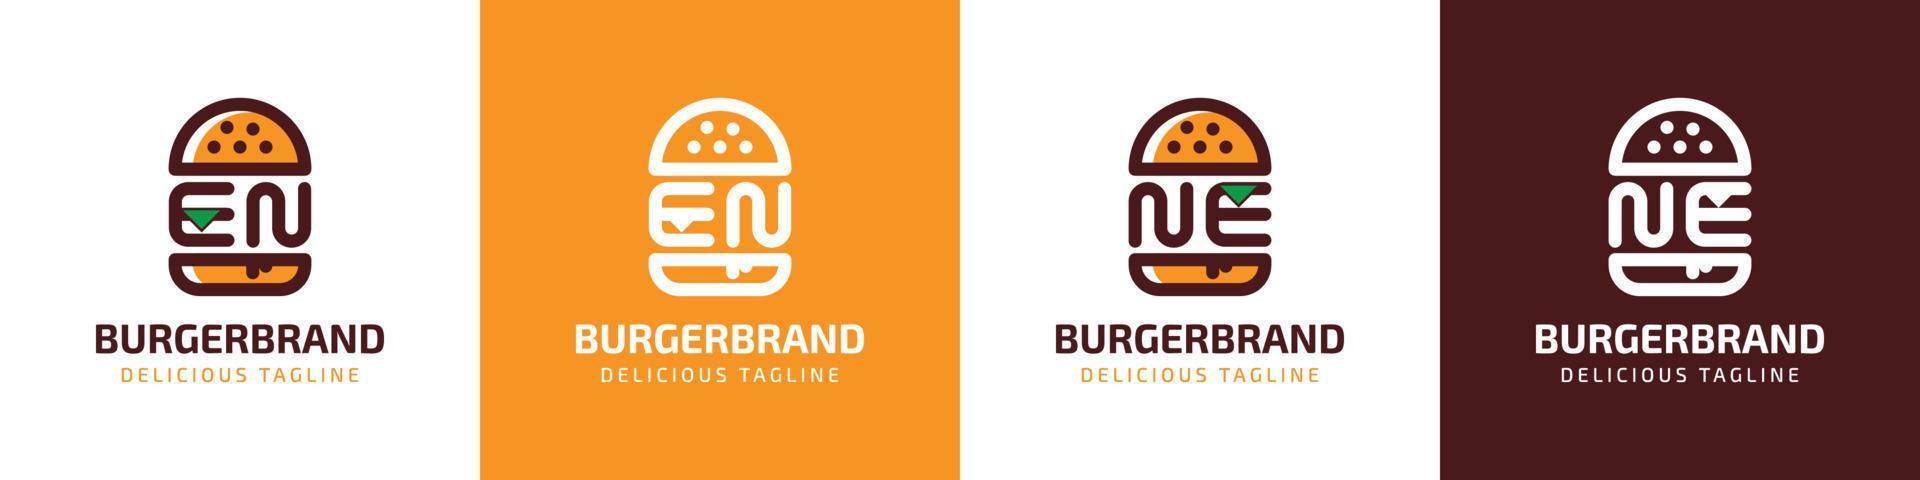 brev sv och ne burger logotyp, lämplig för några företag relaterad till burger med sv eller ne initialer. vektor